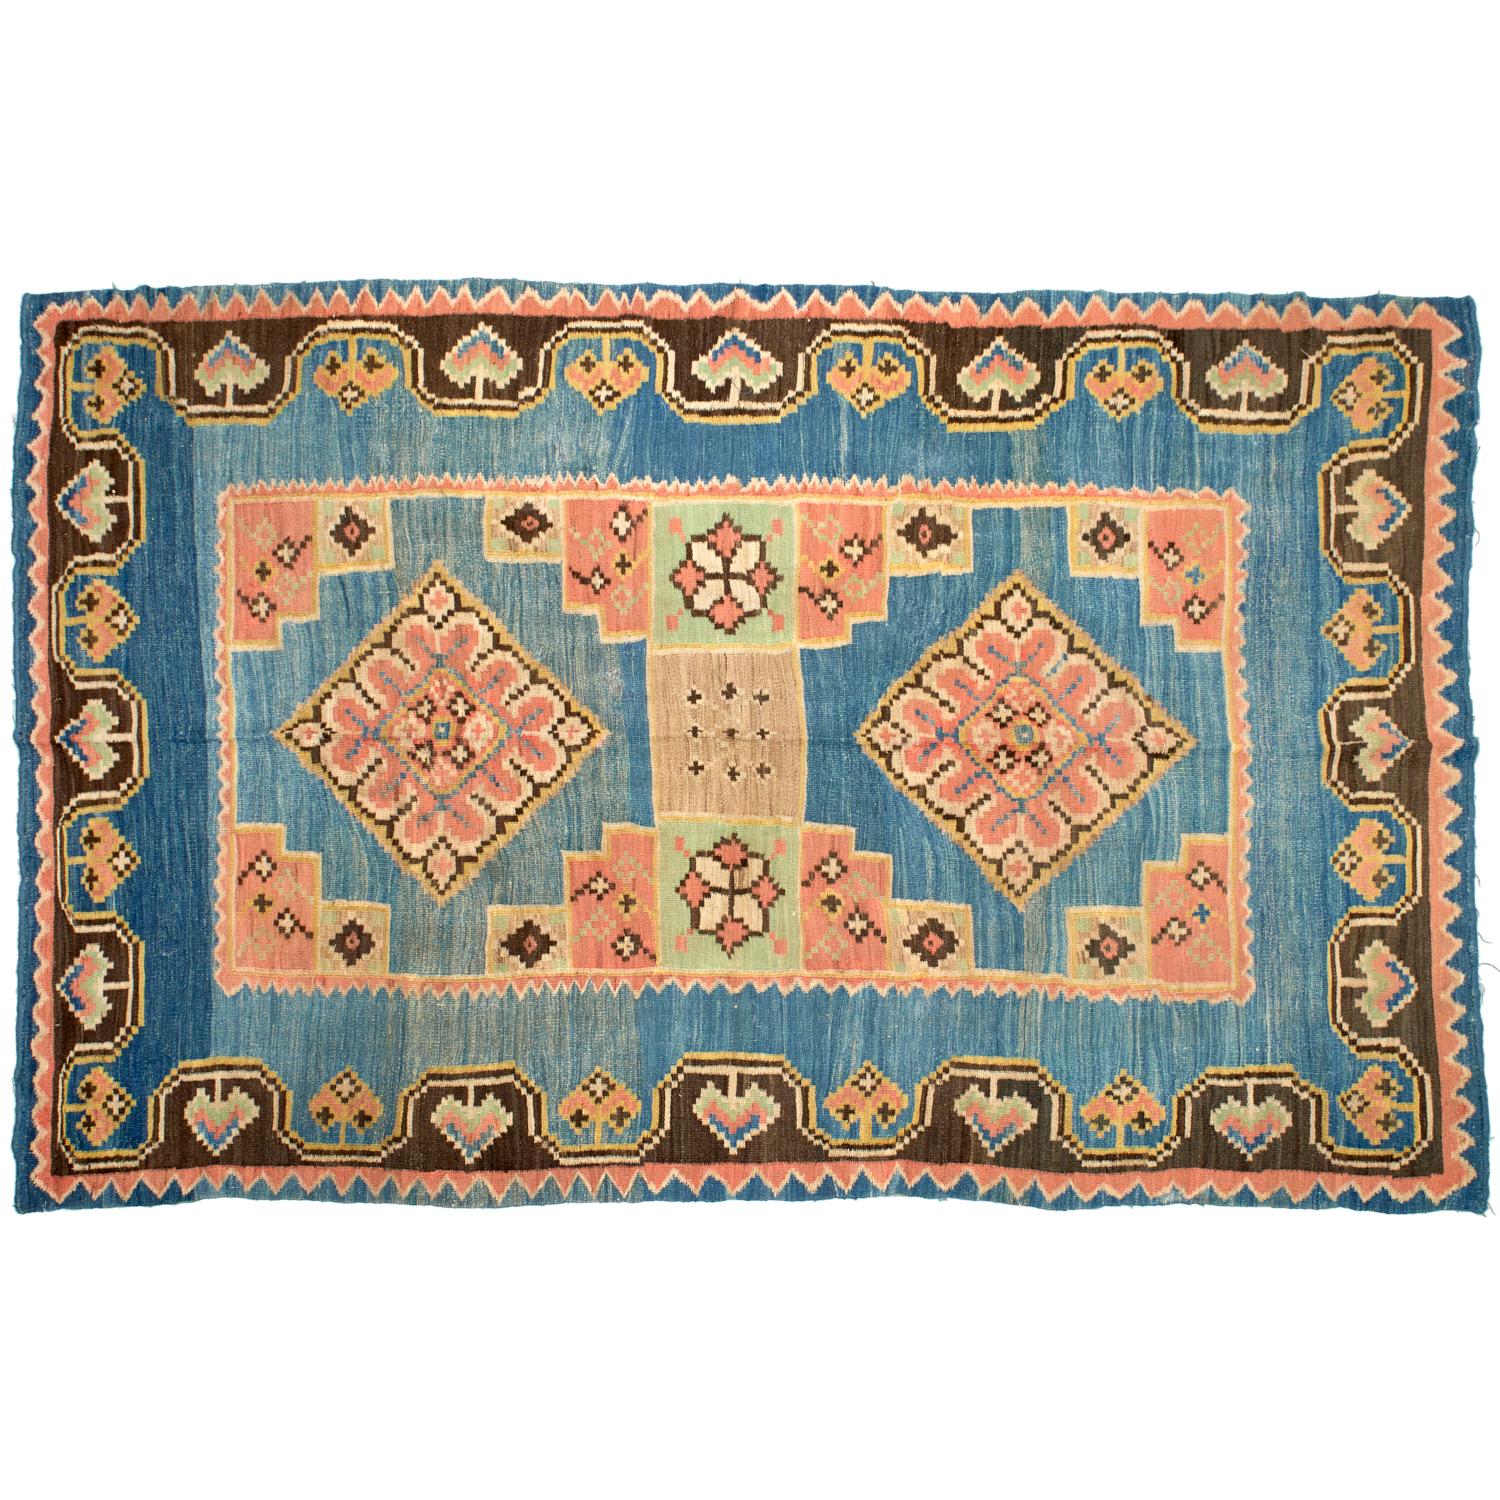 Antike Anfang 20. Jh. Marokkanischer Kilim-Teppich, mit zwei zentralen Rautenmedaillons, 
in einfacher Flachgewebe- oder Gobelintechnik hergestellt, bei der das Muster durch horizontale Schussfäden erzeugt wird, die die vertikalen Kettfäden